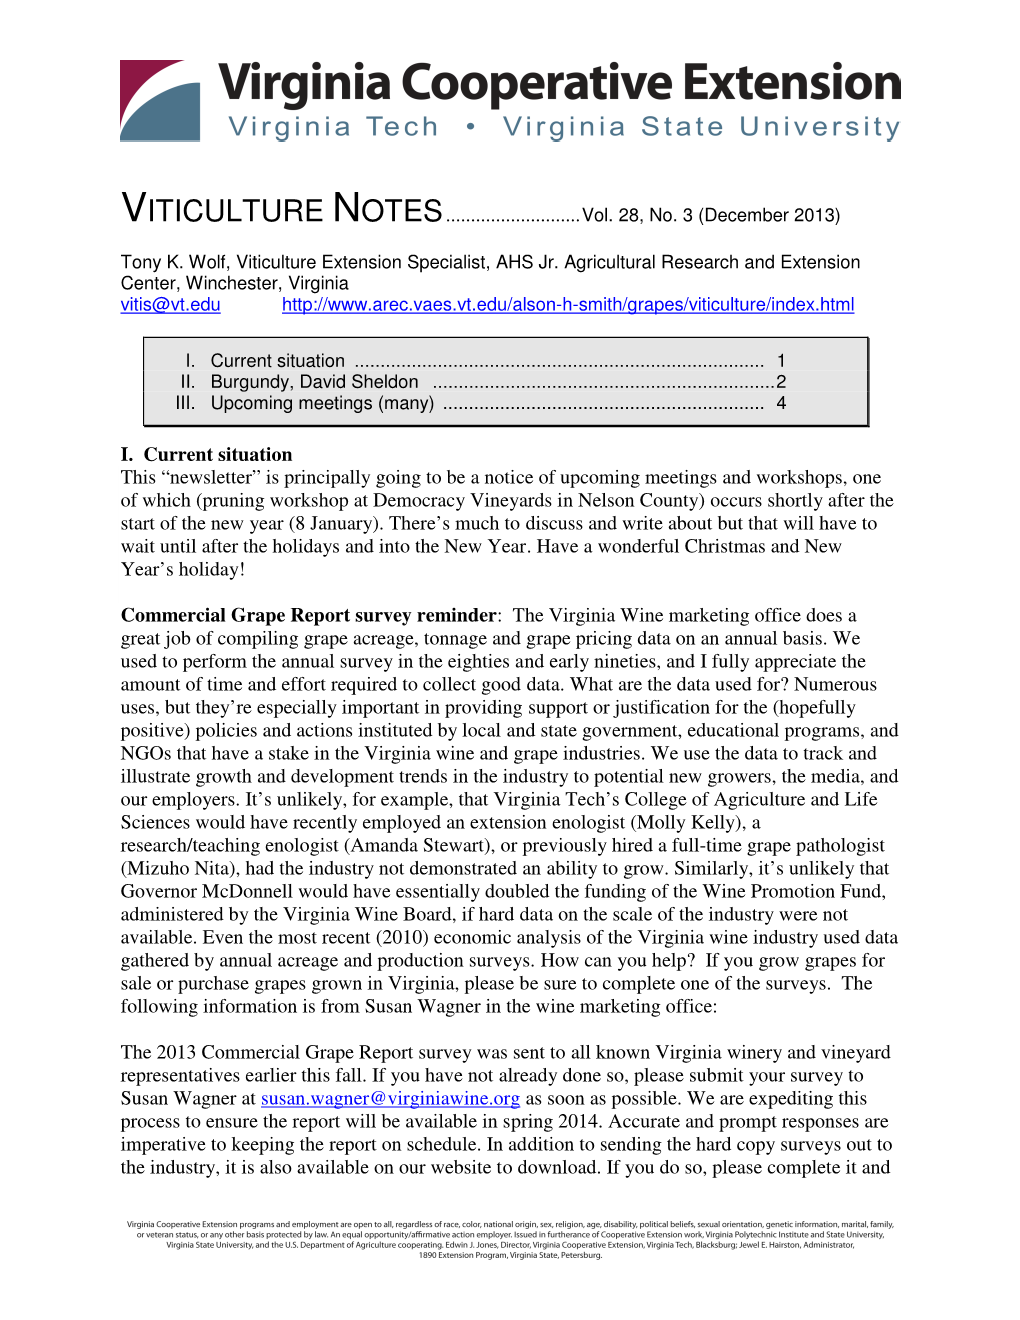 VITICULTURE NOTES...Vol. 28, No. 3 (December 2013)